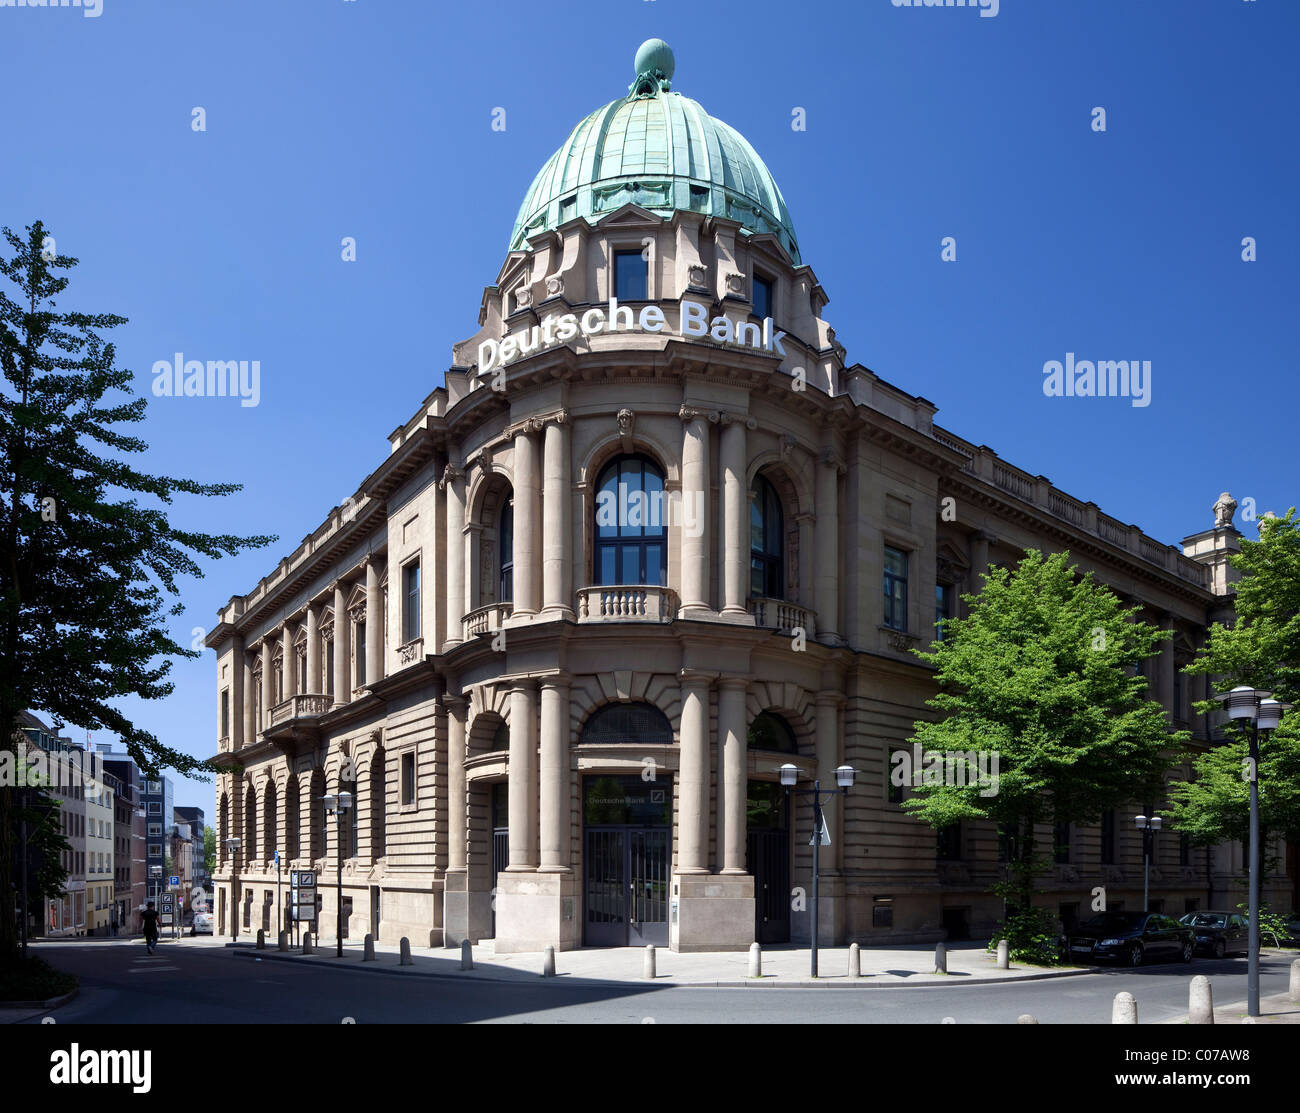 Deutsche Bank ou Banque Allemande, Essen, région de la Ruhr, Nordrhein-Westfalen, Germany, Europe Banque D'Images